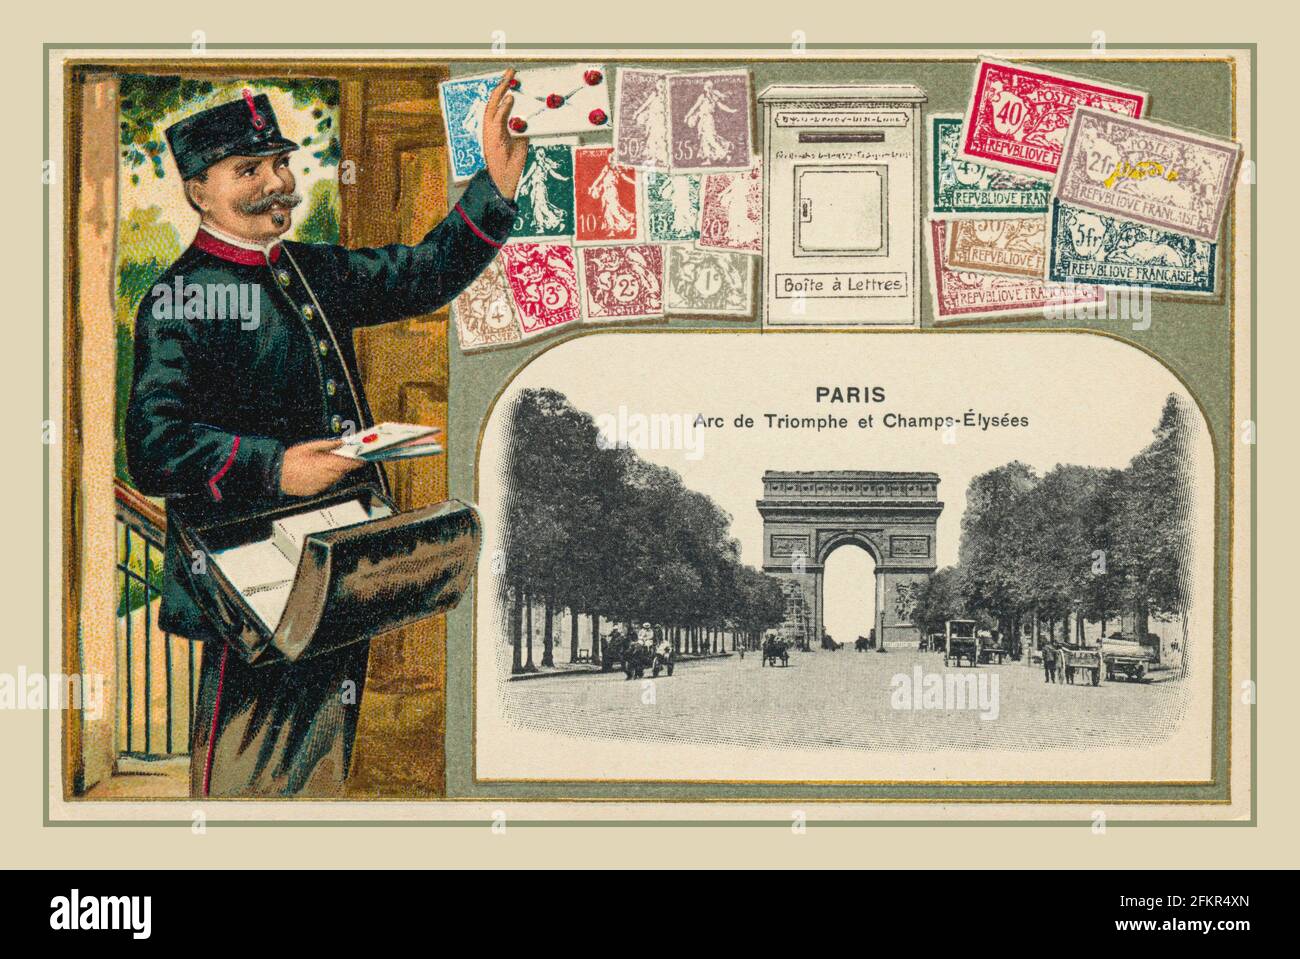 PARIS VINTAGE POSTKARTE POSTPOSTMANN Vintage 1890's French Travel Postkarte für Paris mit dem Arc de Triomphe und der französischen Post Postmann mit Briefmarken und Briefkasten Frankreich Stockfoto